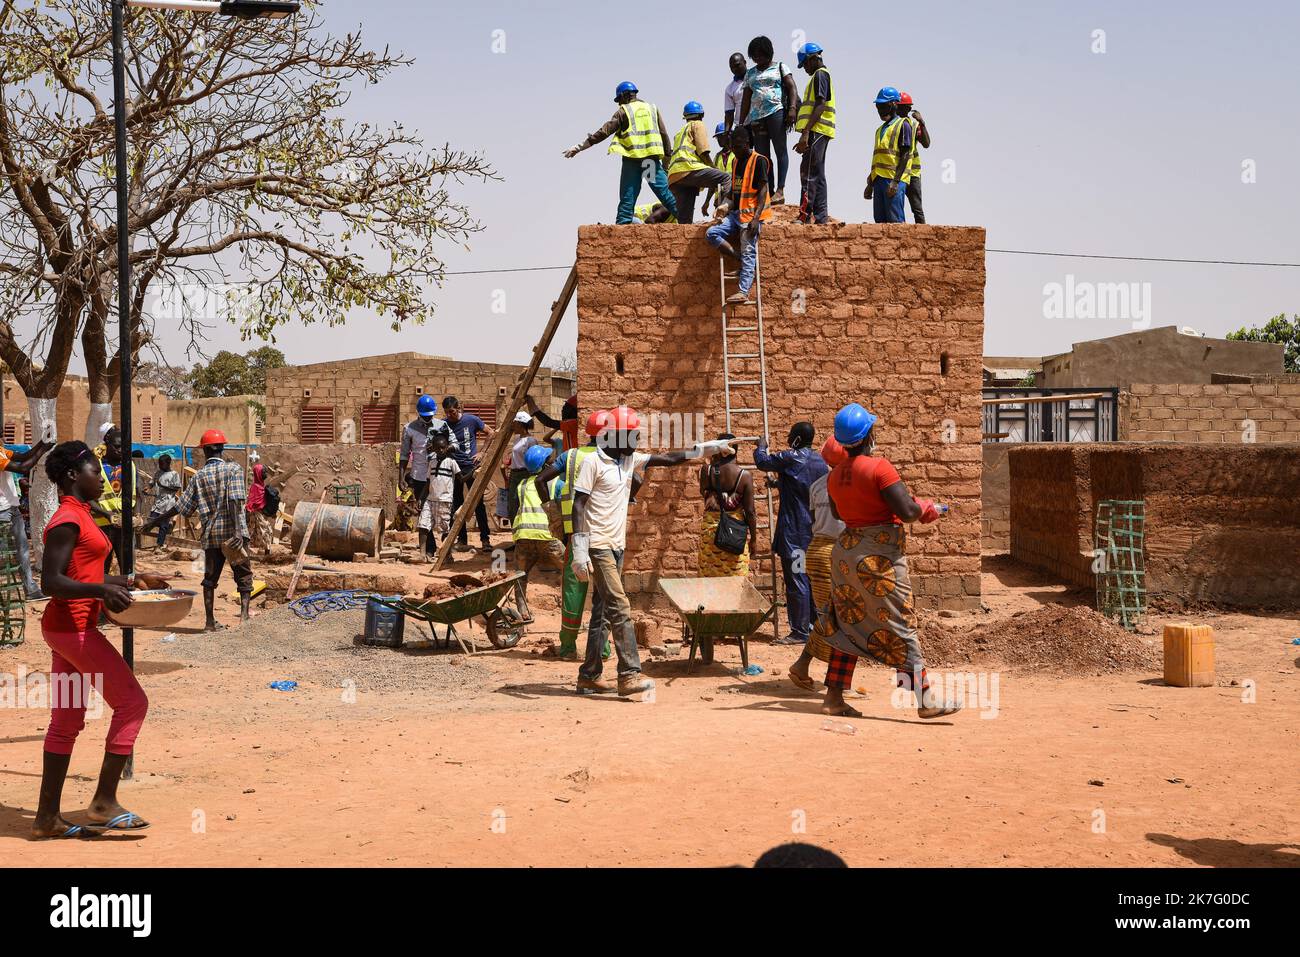 ©Nicolas Remene / le Pictorium/MAXPPP - Nicolas Remene / le Pictorium - 27/2/2021 - Burkina Faso / Ouagadougou / Ouagadougou - 5eme Edition du seminaire FACTsahel+ les 25, 26, 27 et 28 fevrier 2021 a Ouagadougou au Burkina Faso. Le « FACT sahel+ » est le reseau qui federe les acteurs de la Construction en Terre au Sahel et dans ses says limitrophes. / 27/2/2021 - Burkina Faso () / Ouagadougou / Ouagadougou - 5th° edizione del seminario FACTsahel+ del 25, 26, 27 e 28 febbraio 2021 a Ouagadougou, Burkina Faso. FATTO sahel+' è la rete che federa gli attori della costruzione della Terra nella S Foto Stock